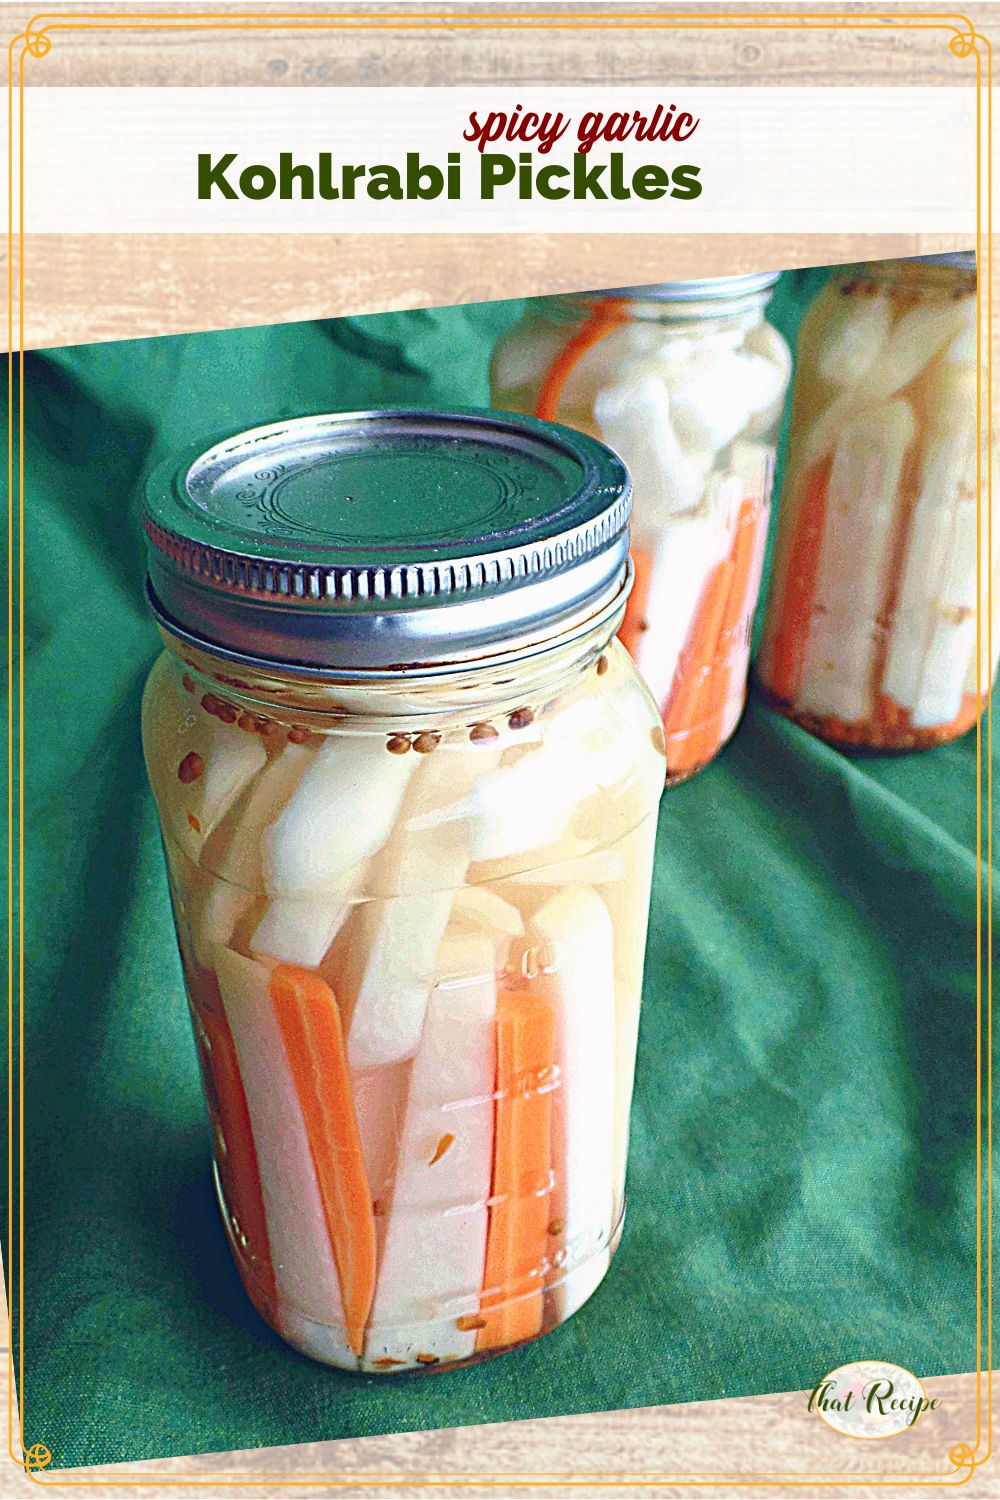 Kohlrabi Pickles in a Jar